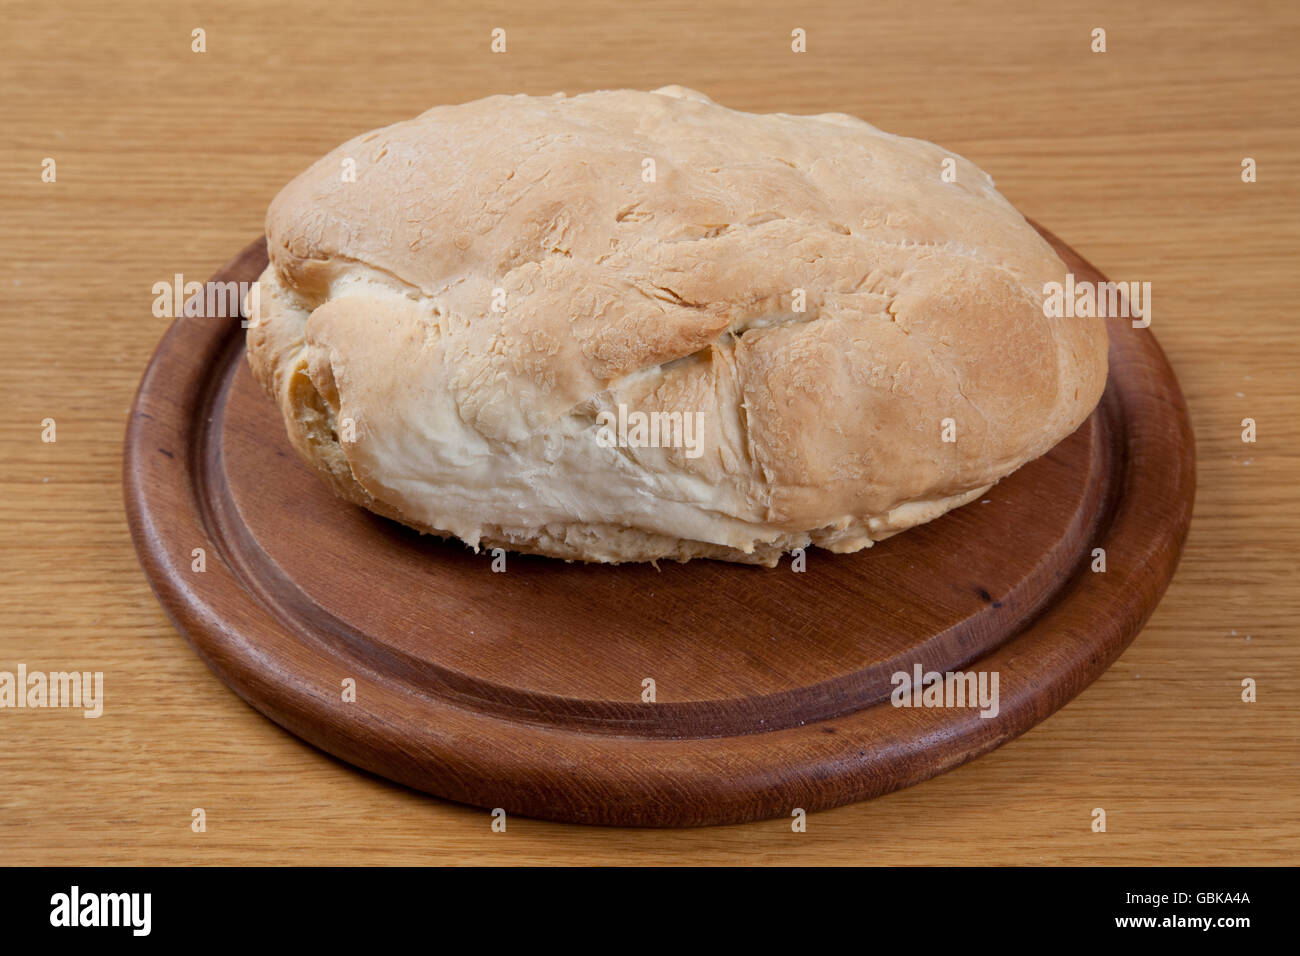 Bread, white bread on a wooden board Stock Photo